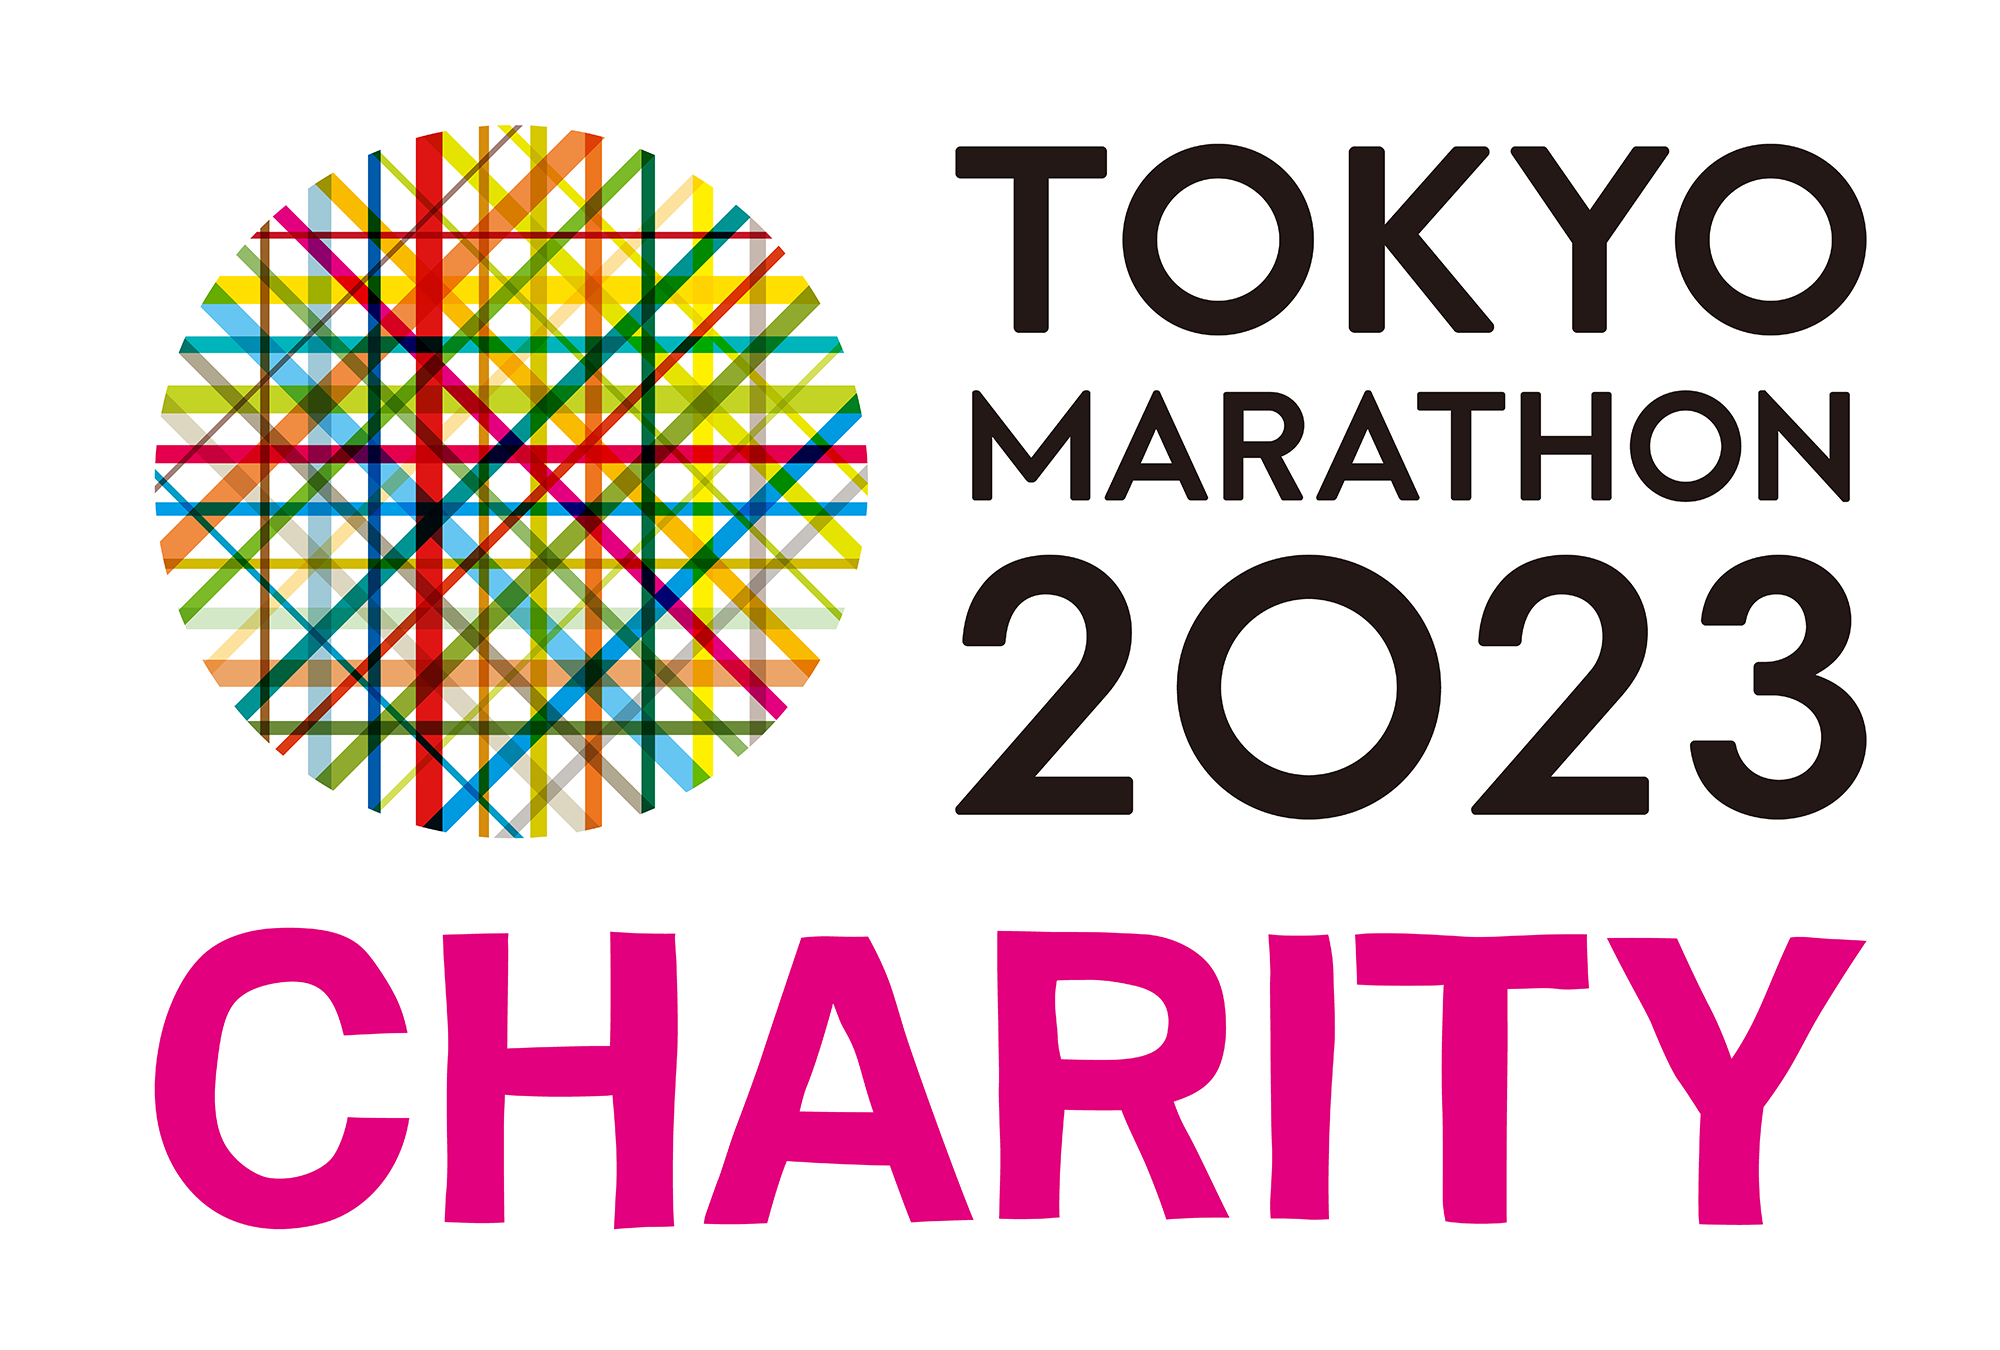 okyo Marathon 2023 Charity on March 5 2023